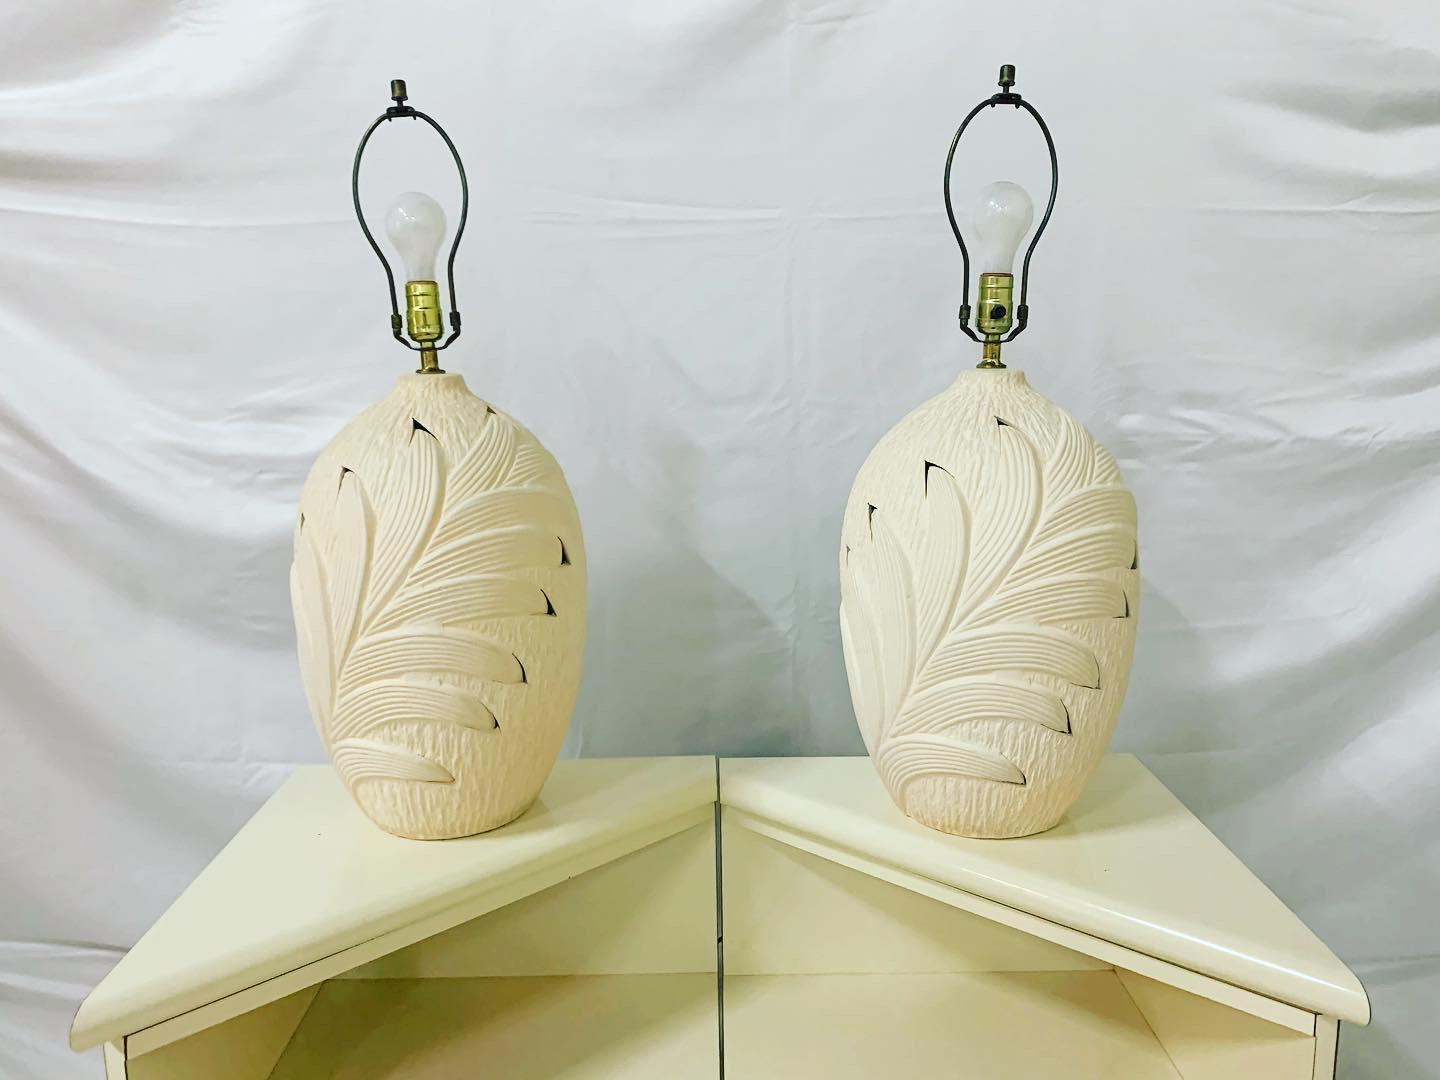 Paire de lampes de table vintage des années 80 de style Serge Roche fabriquées par Harris lamp company. Les grandes bases en forme d'urne sont réalisées en plâtre beige et décorées d'un motif de feuilles de palmier en bas-relief qui se chevauchent.